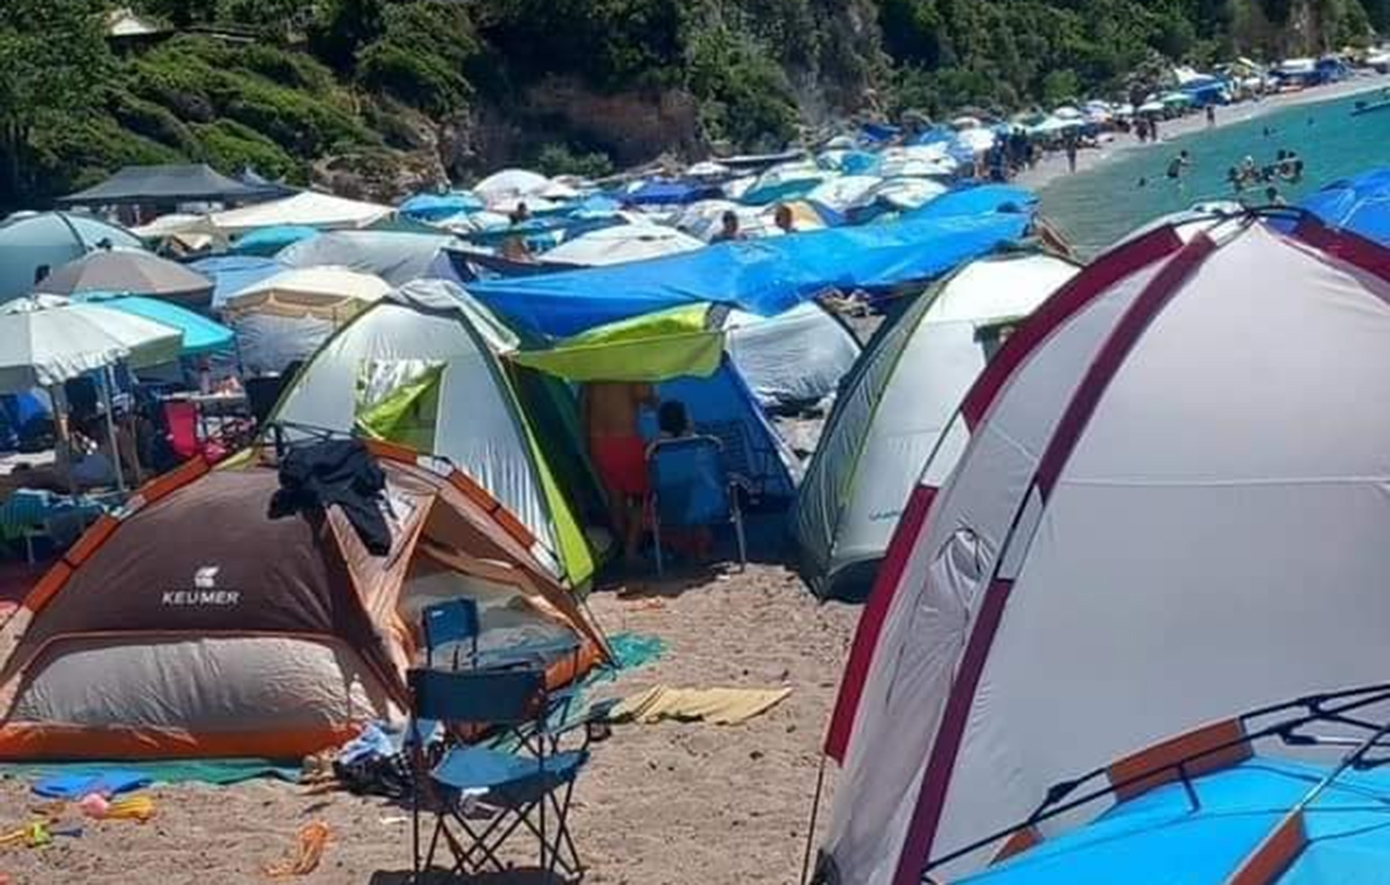 Οι σκηνές «εξαφάνισαν» μια από τις ωραιότερες παραλίες της Εύβοιας &#8211; Αντιδρούν οι κάτοικοι της περιοχής για το ελεύθερο κάμπινγκ